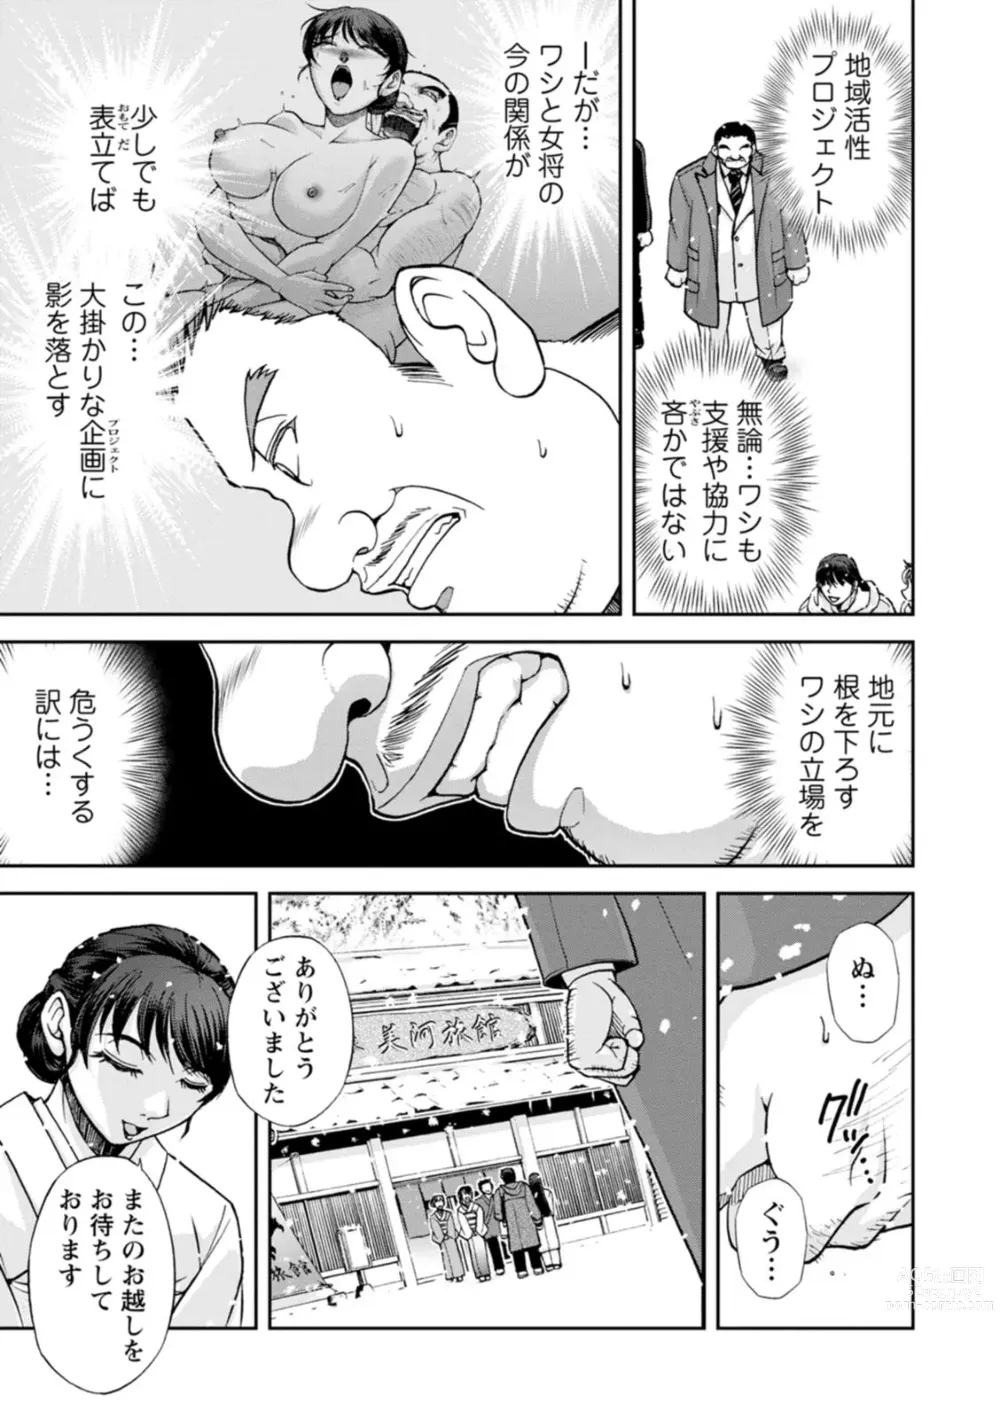 Page 67 of manga Okami no Touko-san - Miss. Touko, a Landlady of a Hot spring inn